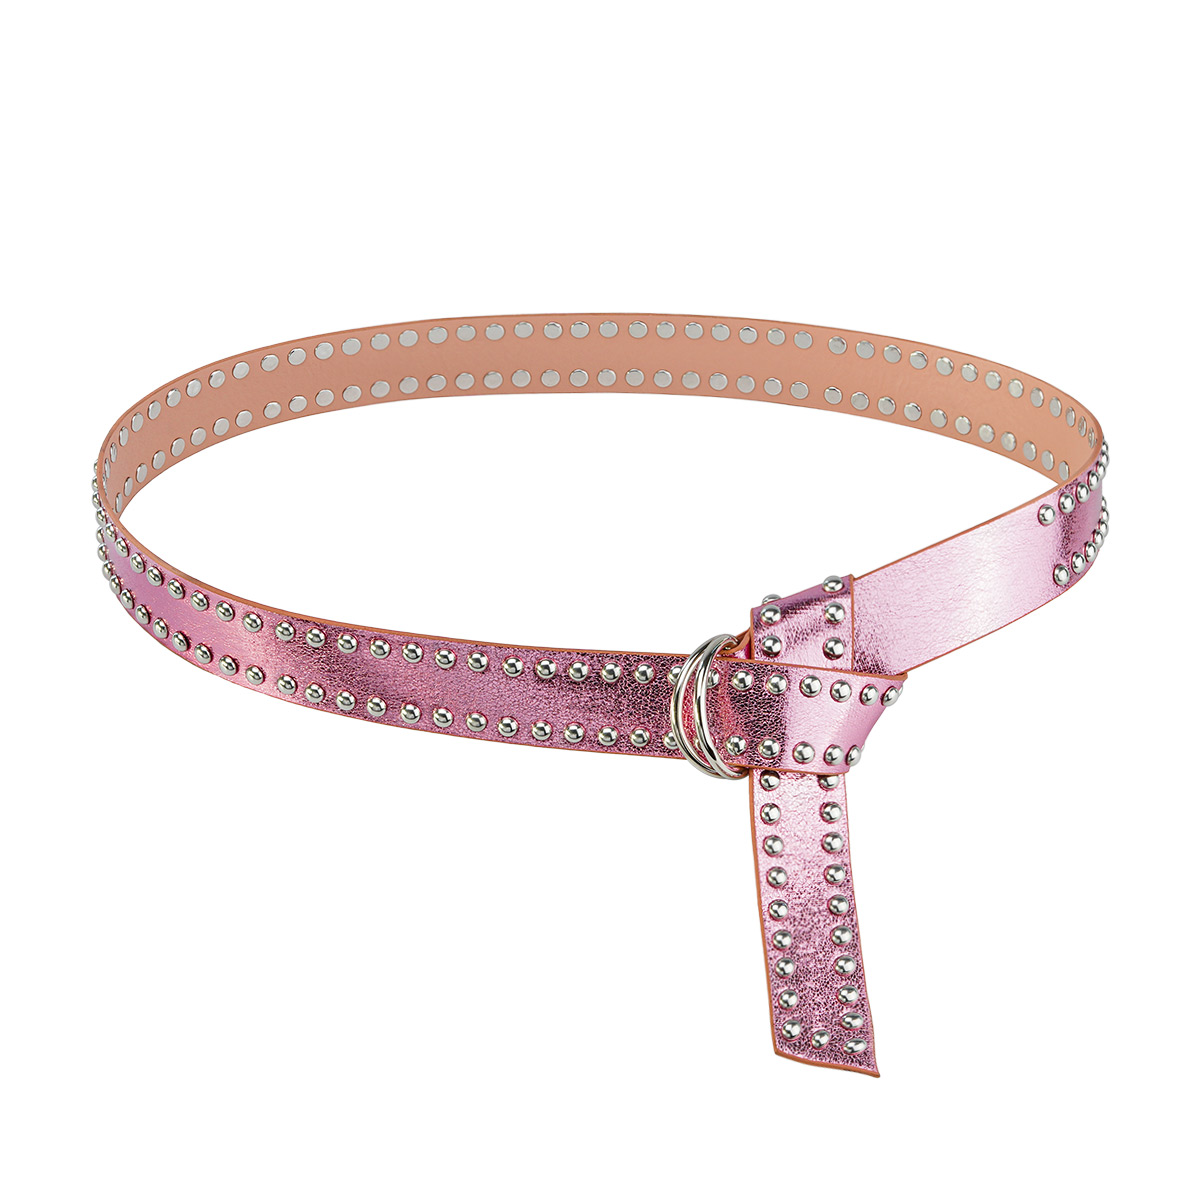 Cinturón rosa metalizado con tachuelas